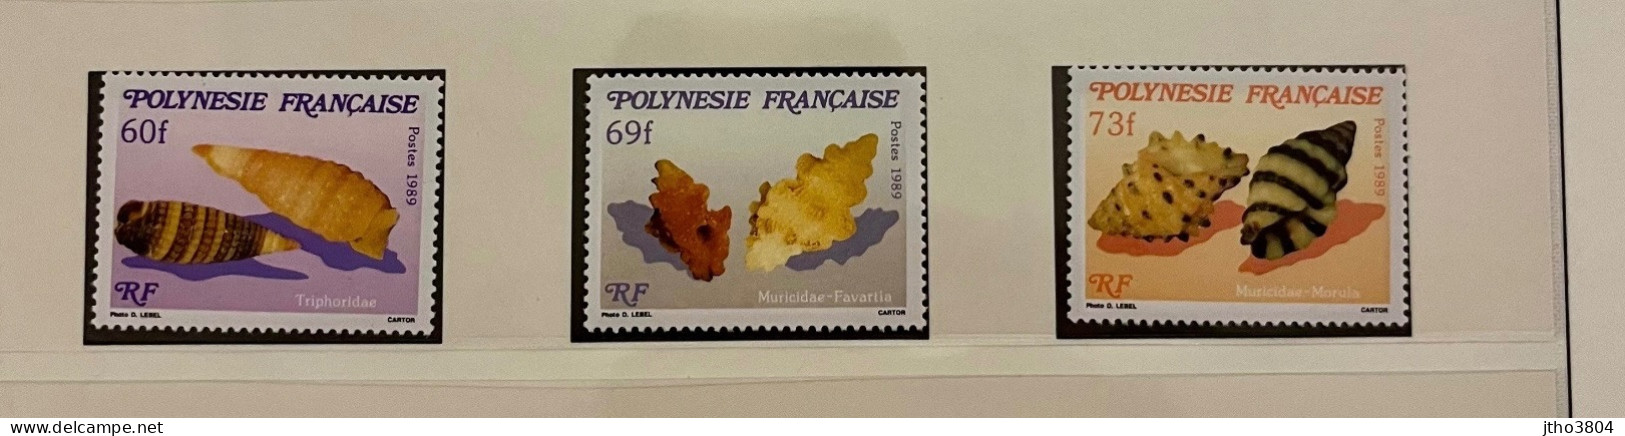 POLYNÉSIE FRANCAISE 1989 3v Neuf MNH ** YT 343 345 Mi FRENCH POLYNESIA FRANZOSISCH POLYNESIEN - Neufs